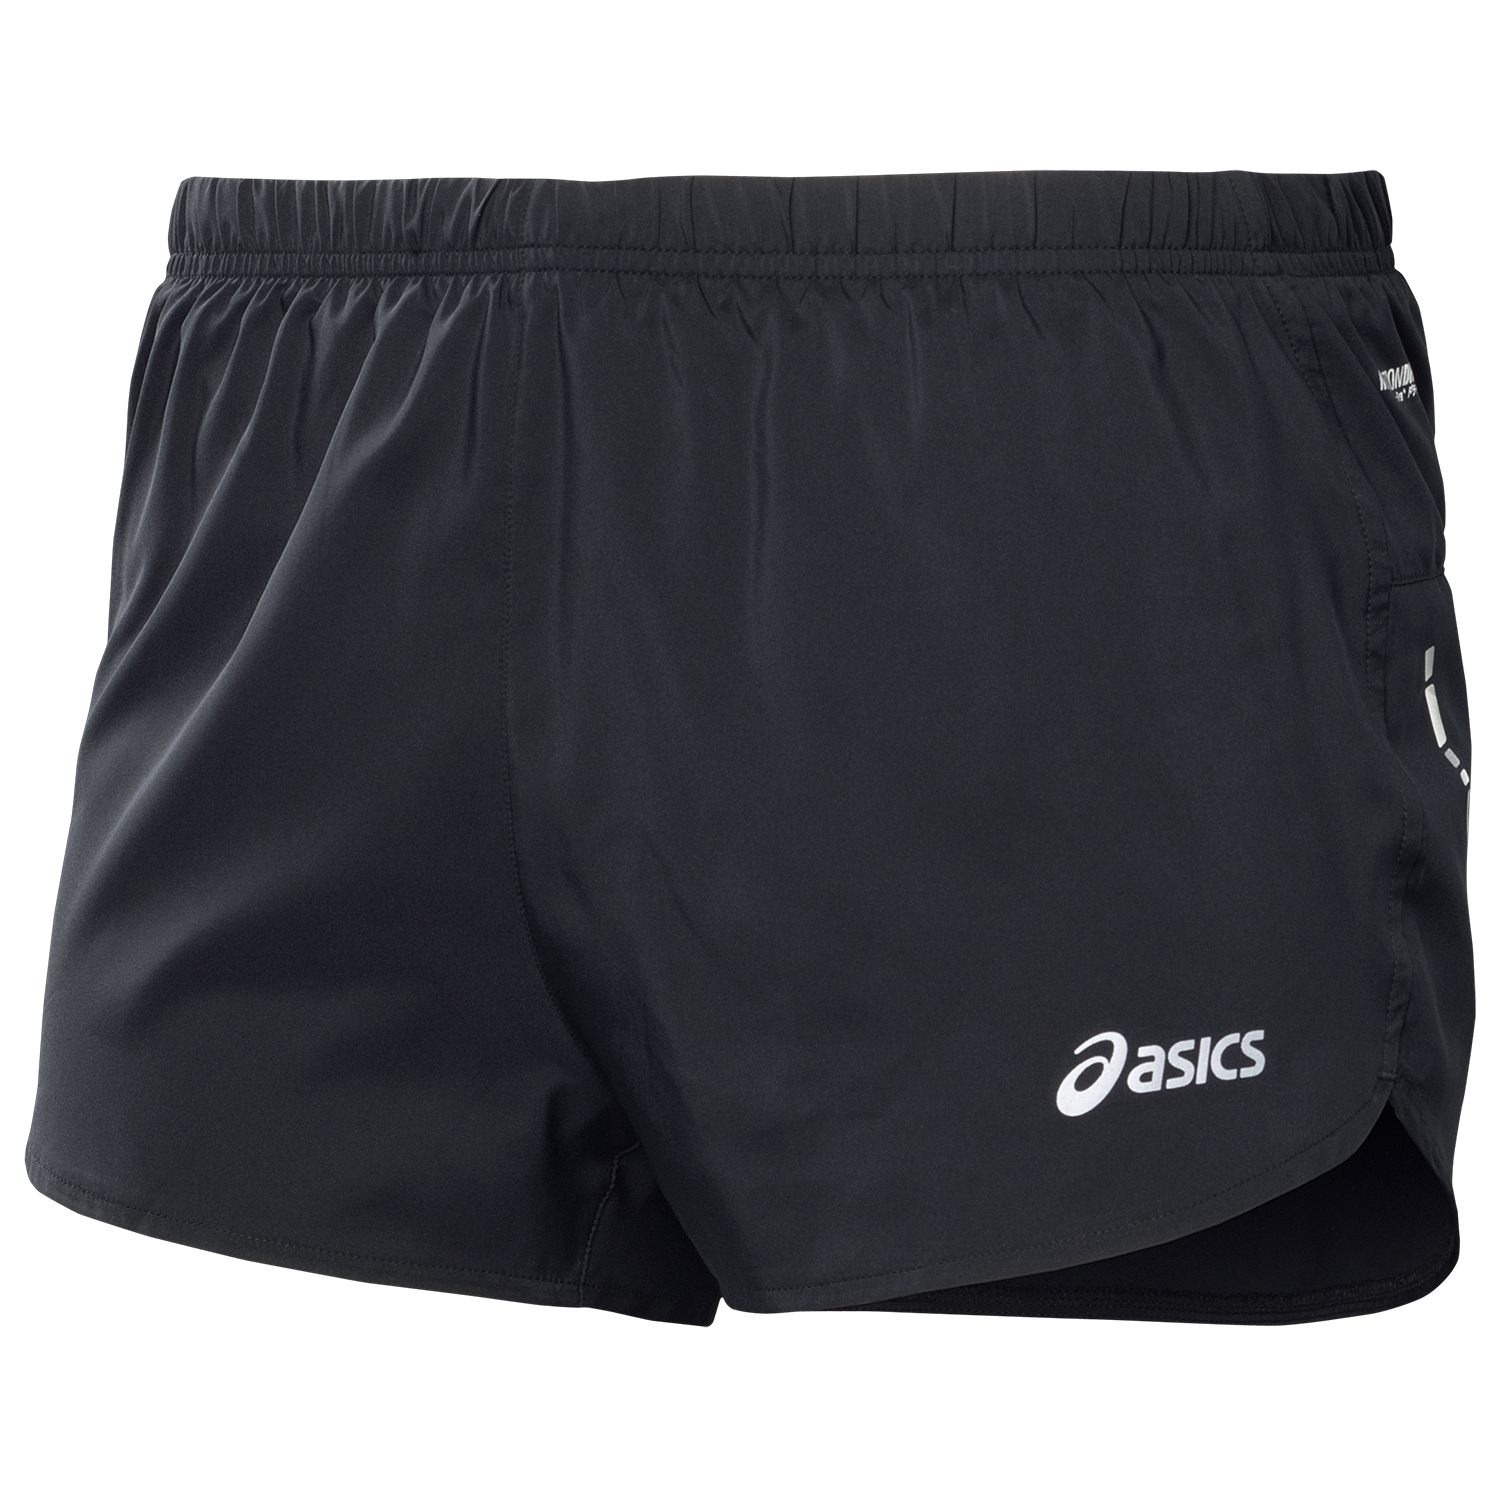 Спортивные шорты Asics Split Short мужские